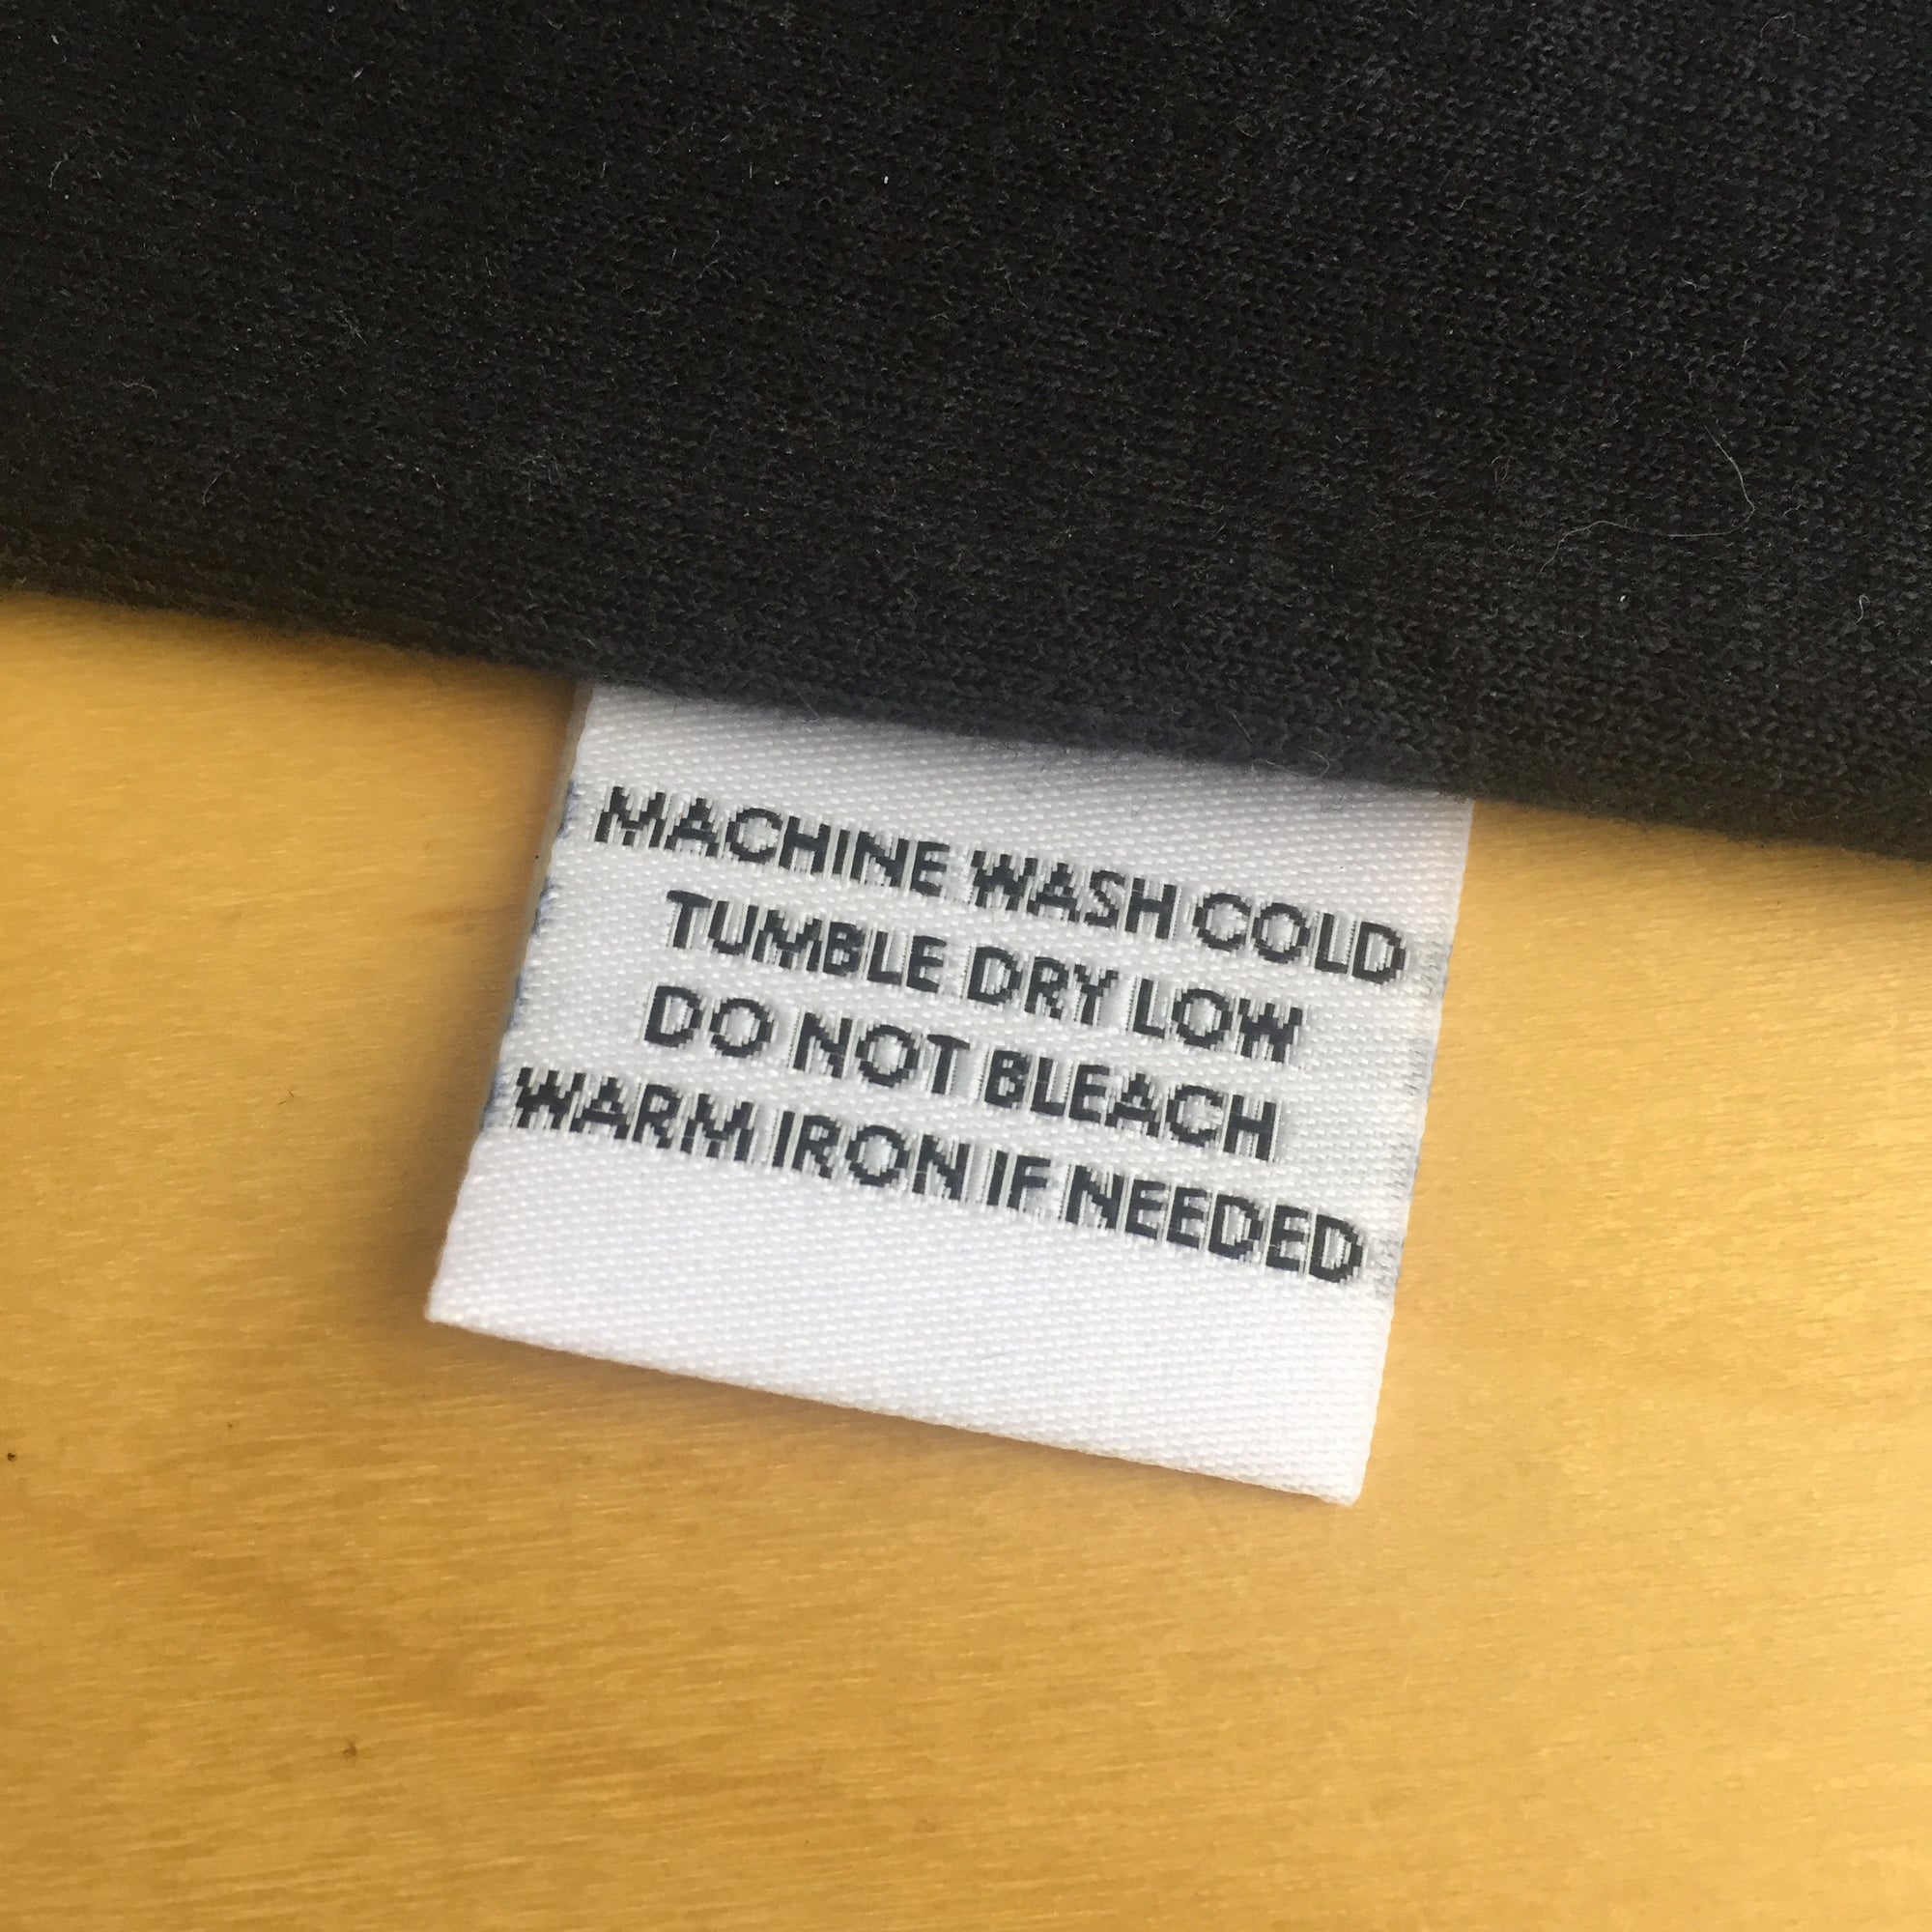 MACHINE WASH COLD - Garment Care Label